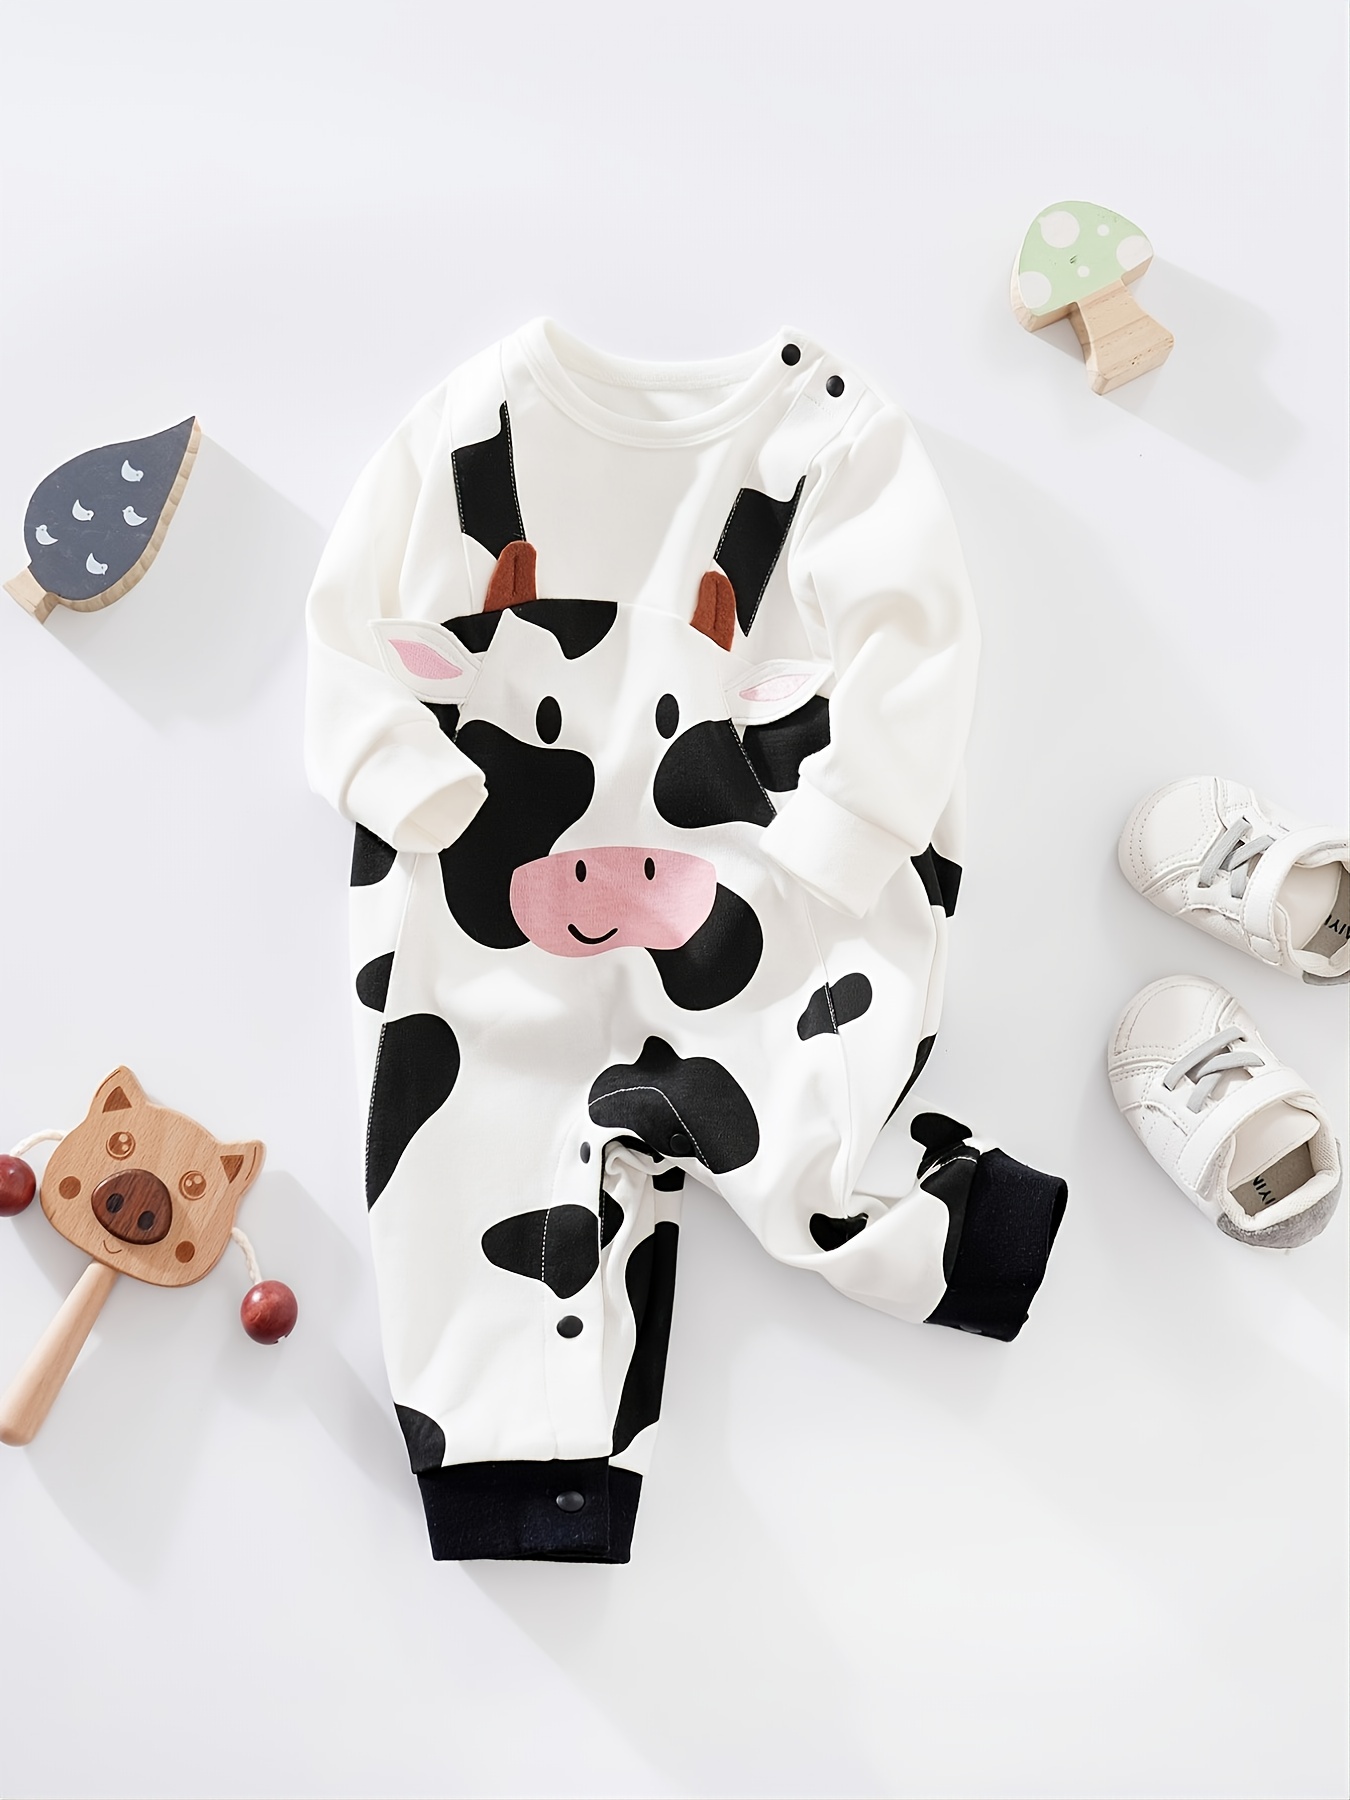 Disfraz De Vaca Bebe - Temu